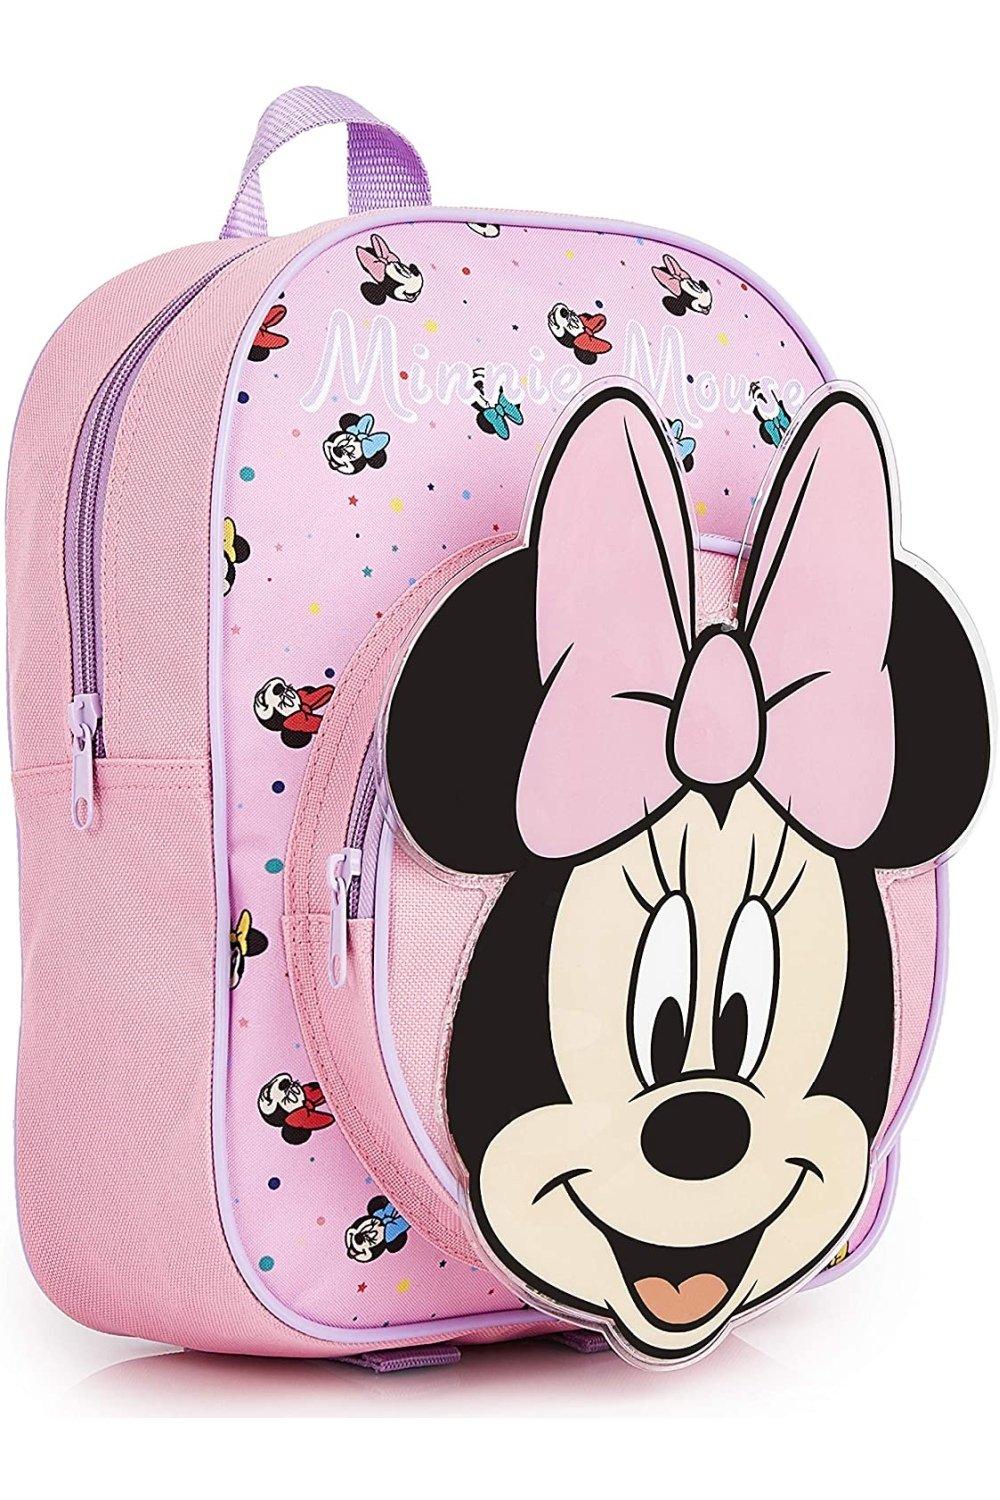 Школьная сумка Минни Маус Disney, розовый